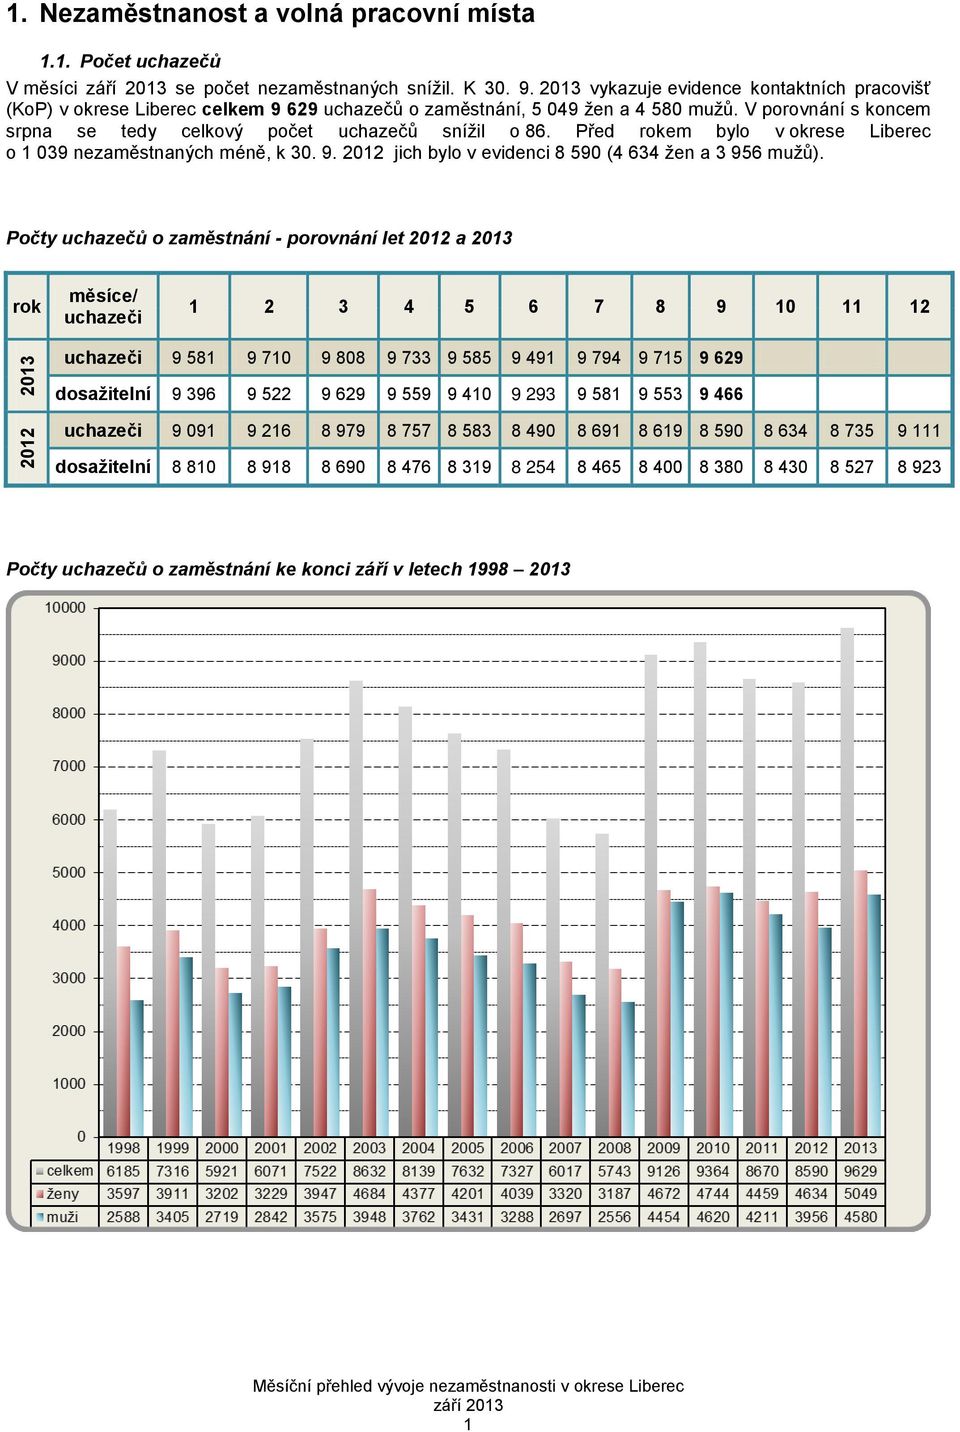 Před rokem bylo v okrese Liberec o 1 039 nezaměstnaných méně, k 30. 9. 2012 jich bylo v evidenci 8 590 (4 634 žen a 3 956 mužů).